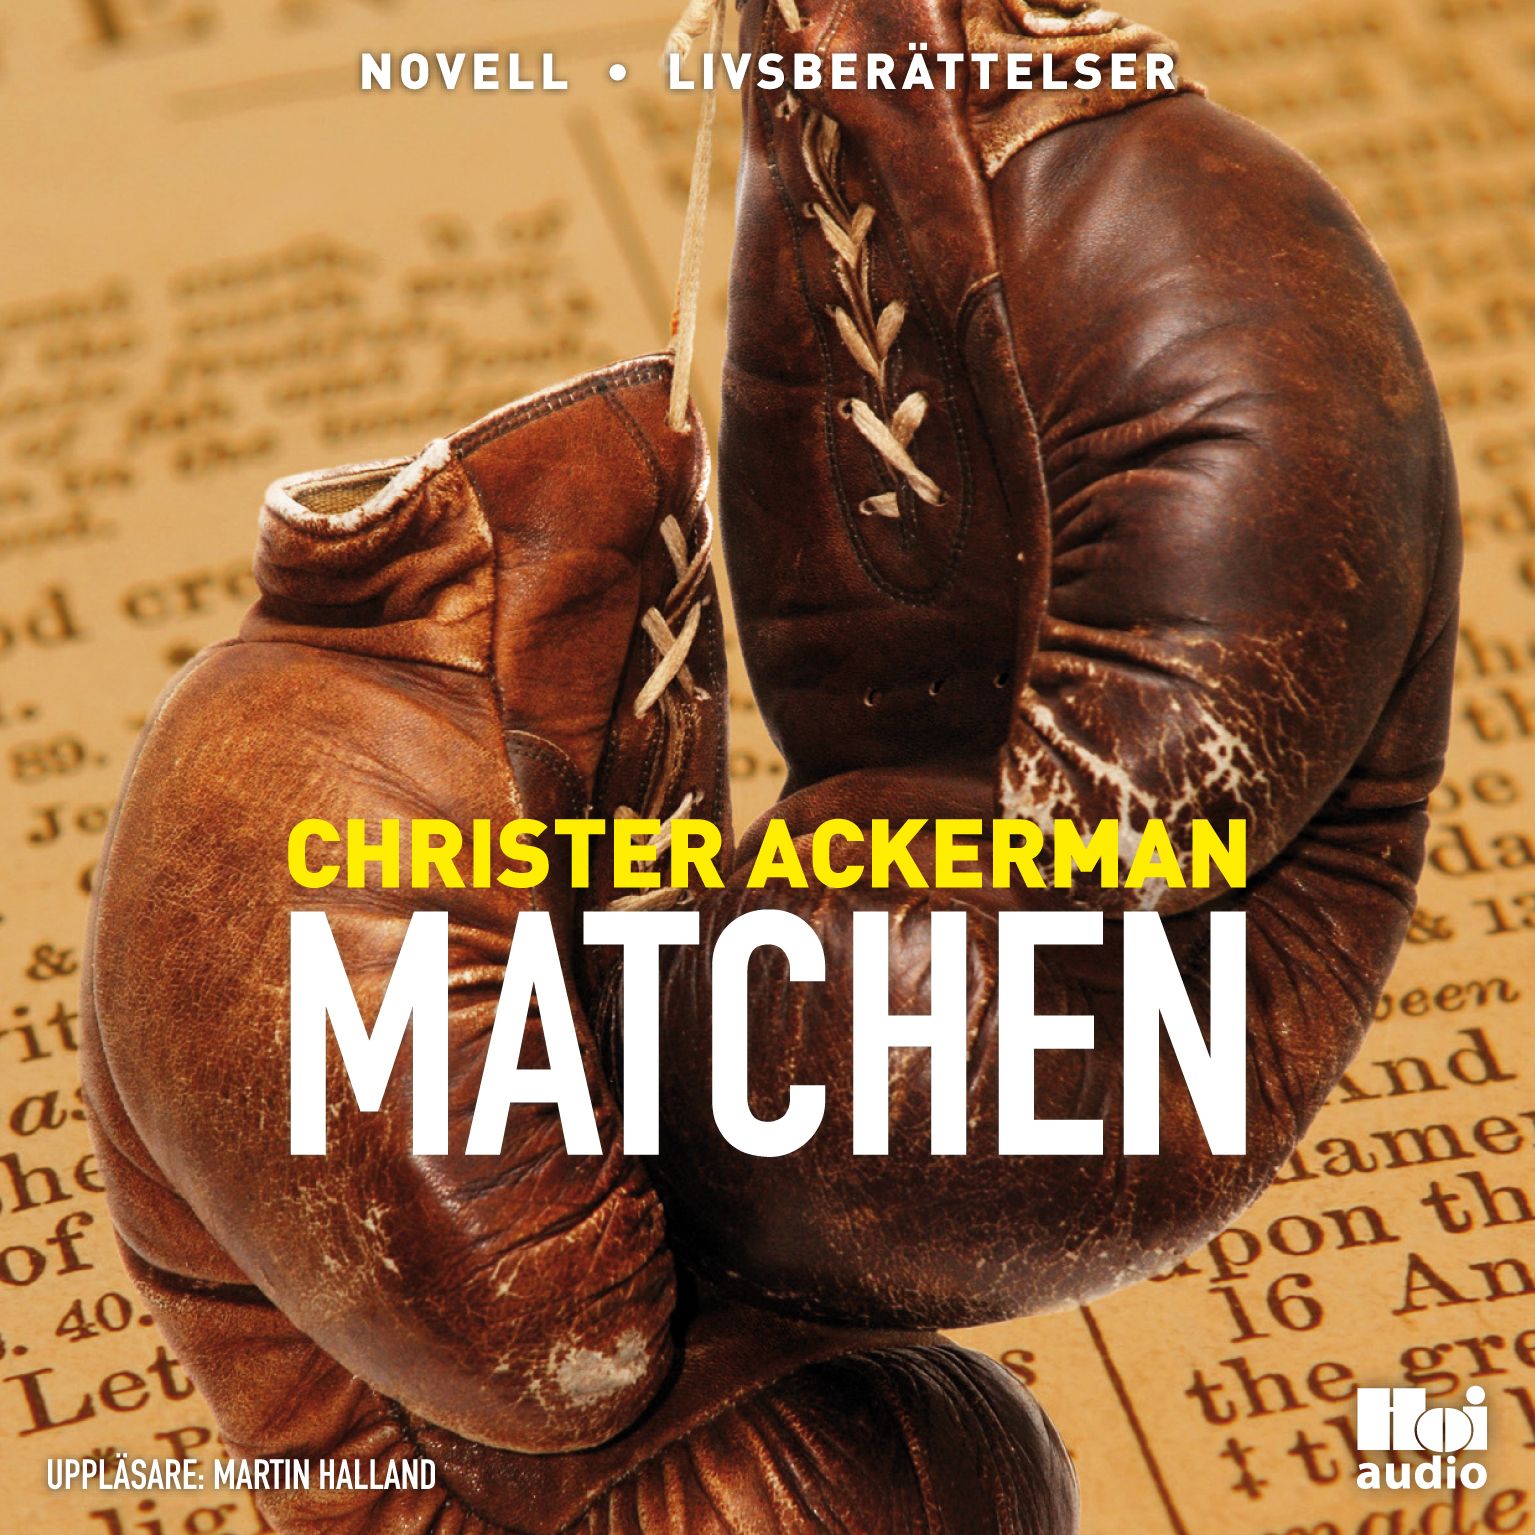 Matchen, lydbog af Christer Ackerman